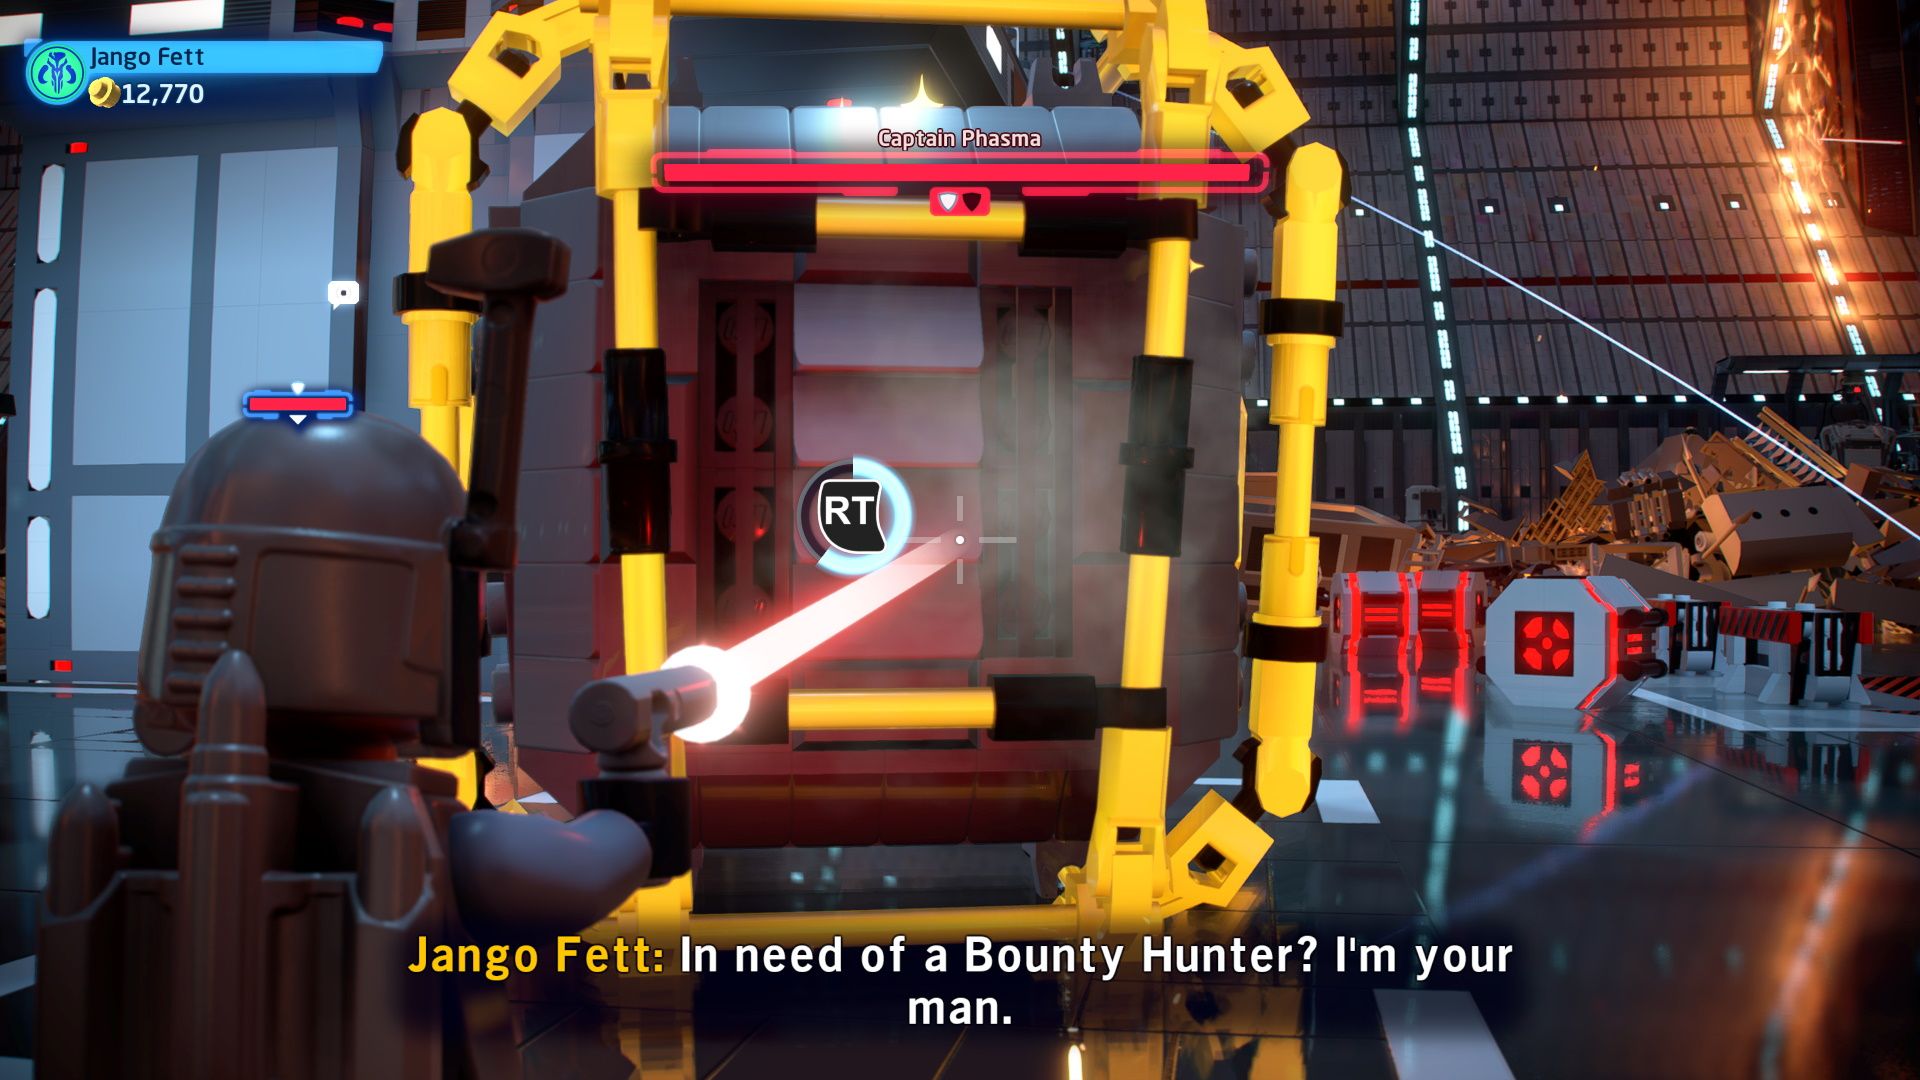 Using a bounty hunter to break open the case